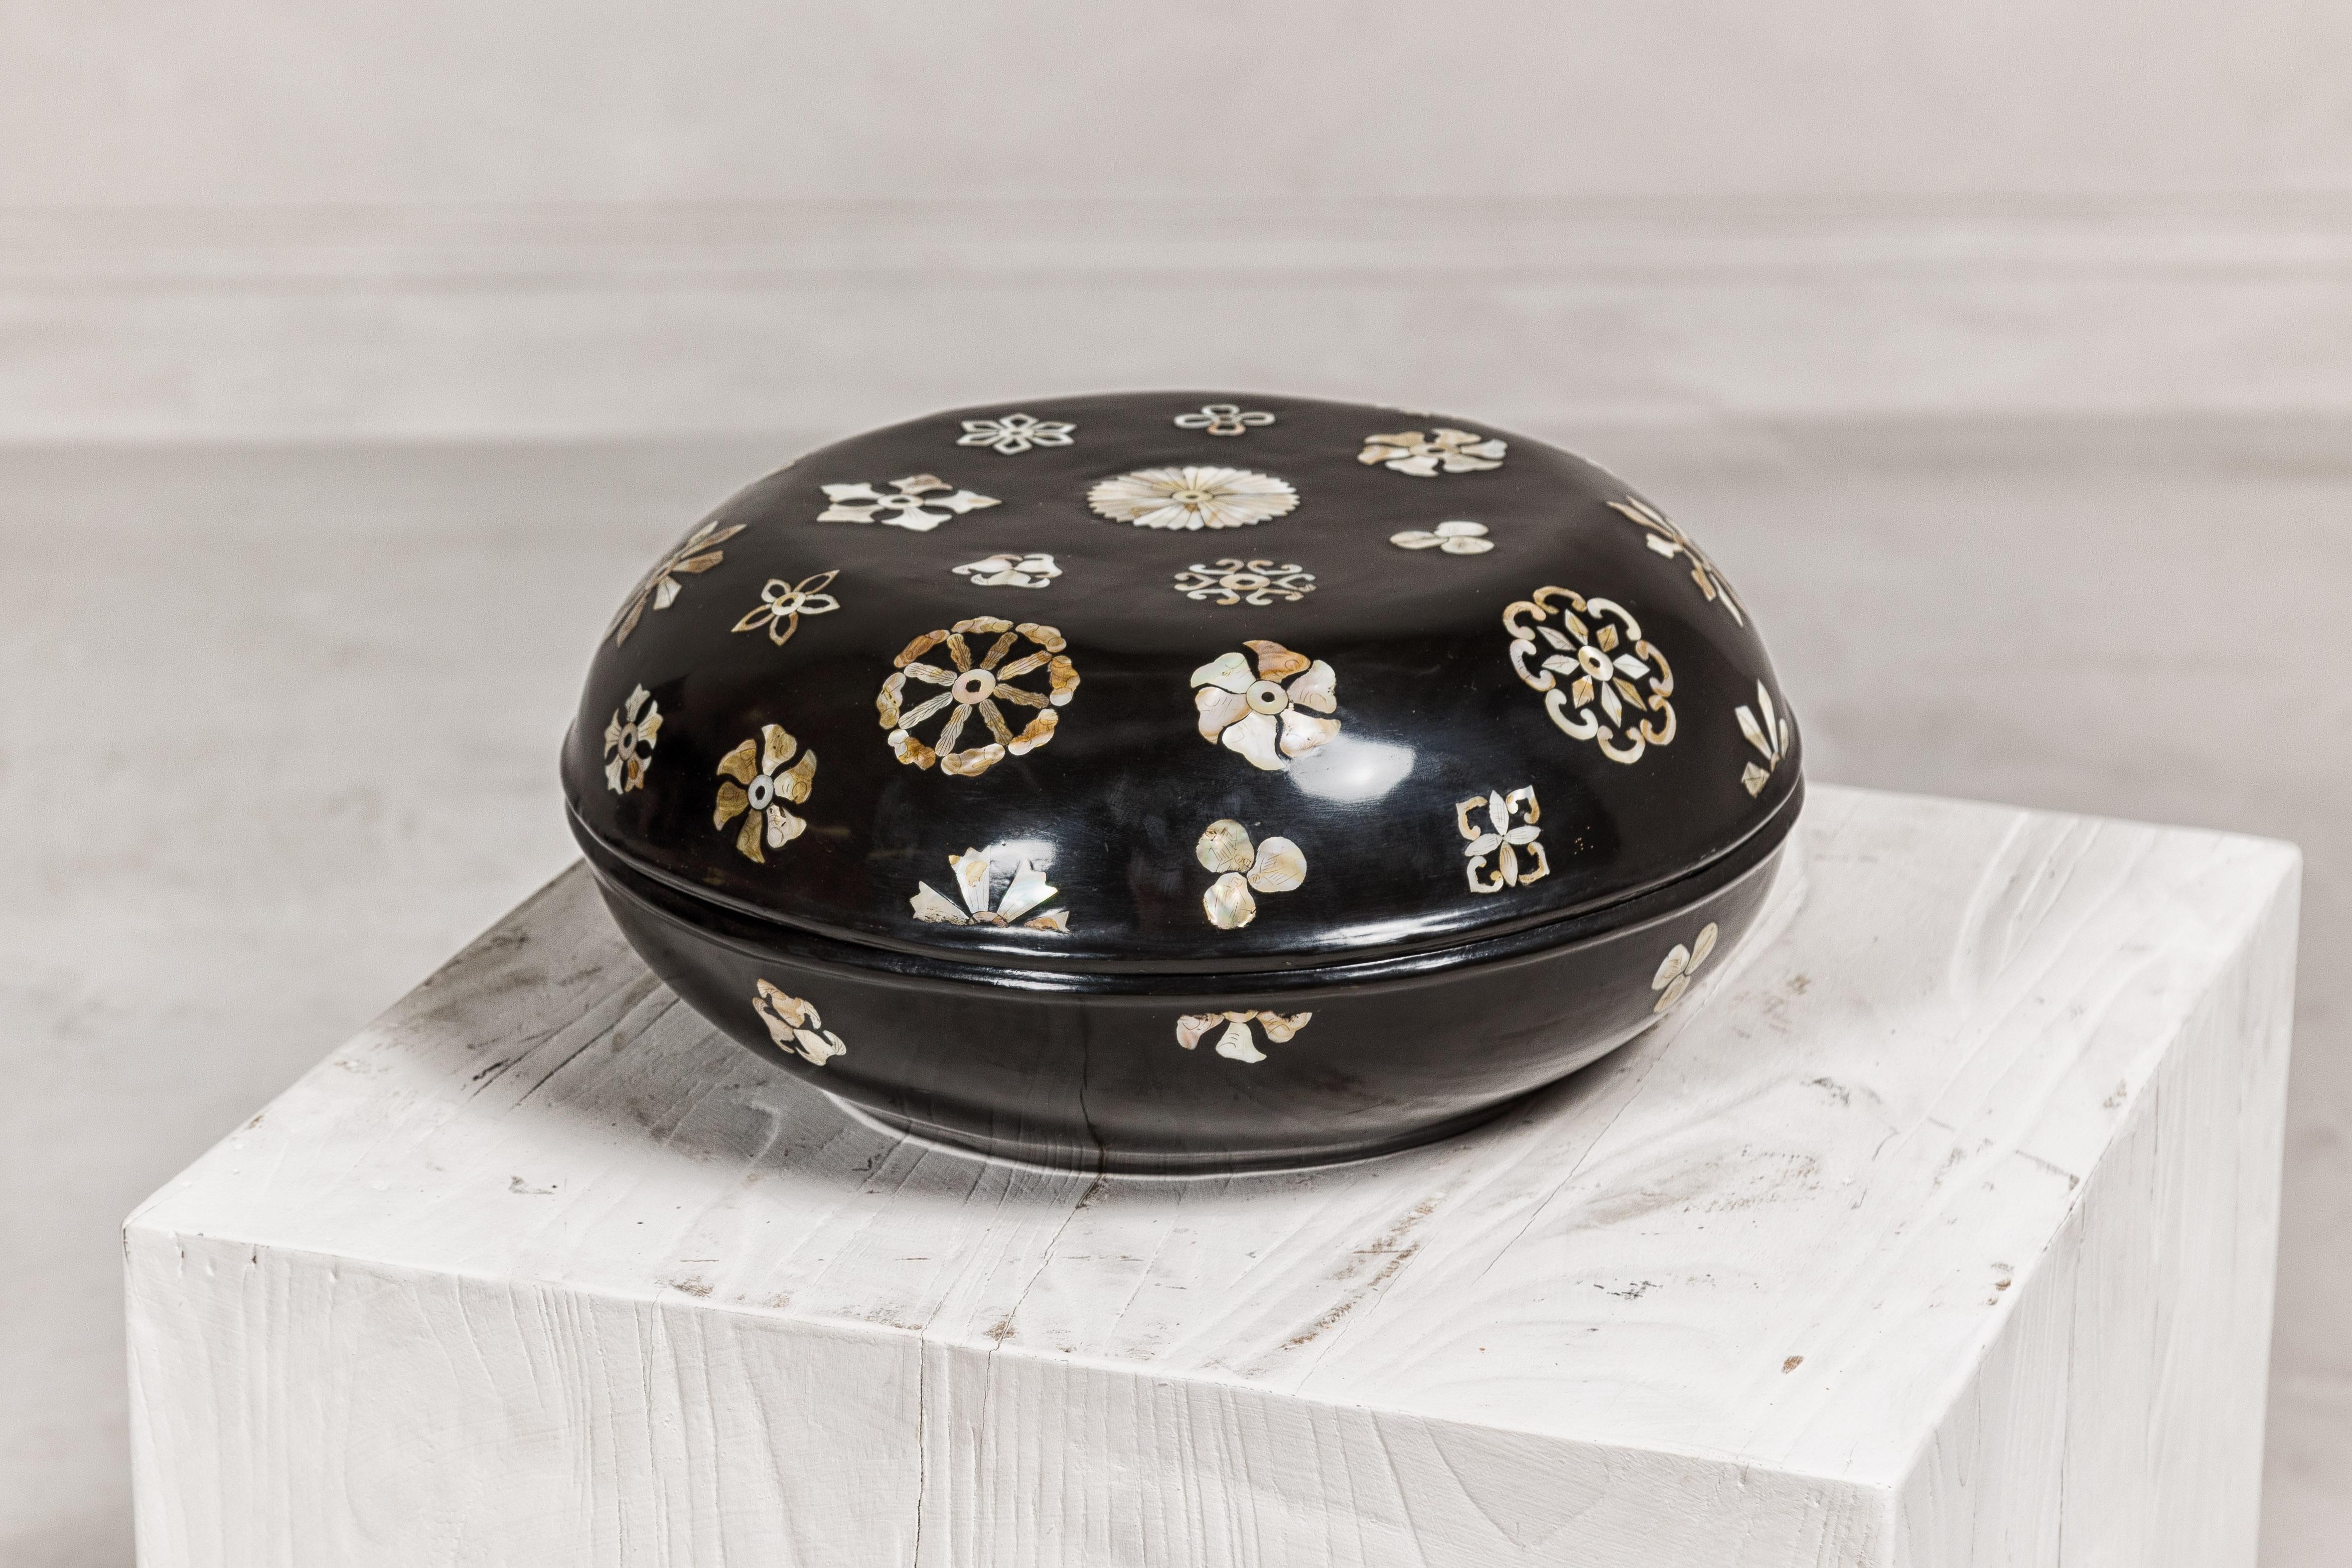 Boîte circulaire vintage à couvercle laqué noir et décor floral incrusté de nacre. Cette boîte chinoise vintage en laque noire témoigne de l'artisanat traditionnel. Sa forme circulaire est à la fois élégante et fonctionnelle. Le couvercle est orné